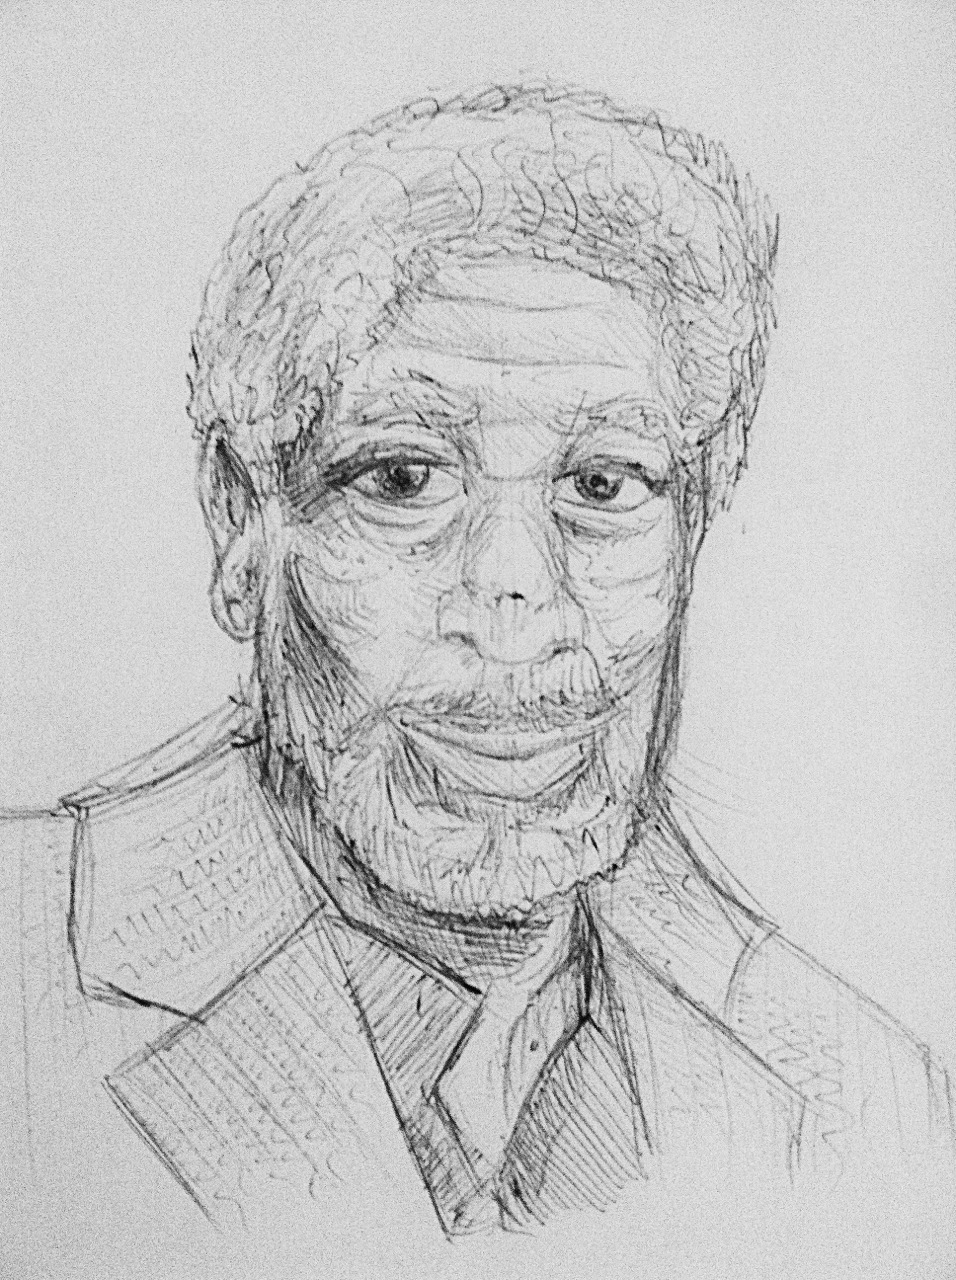 Morgan Freeman sketch